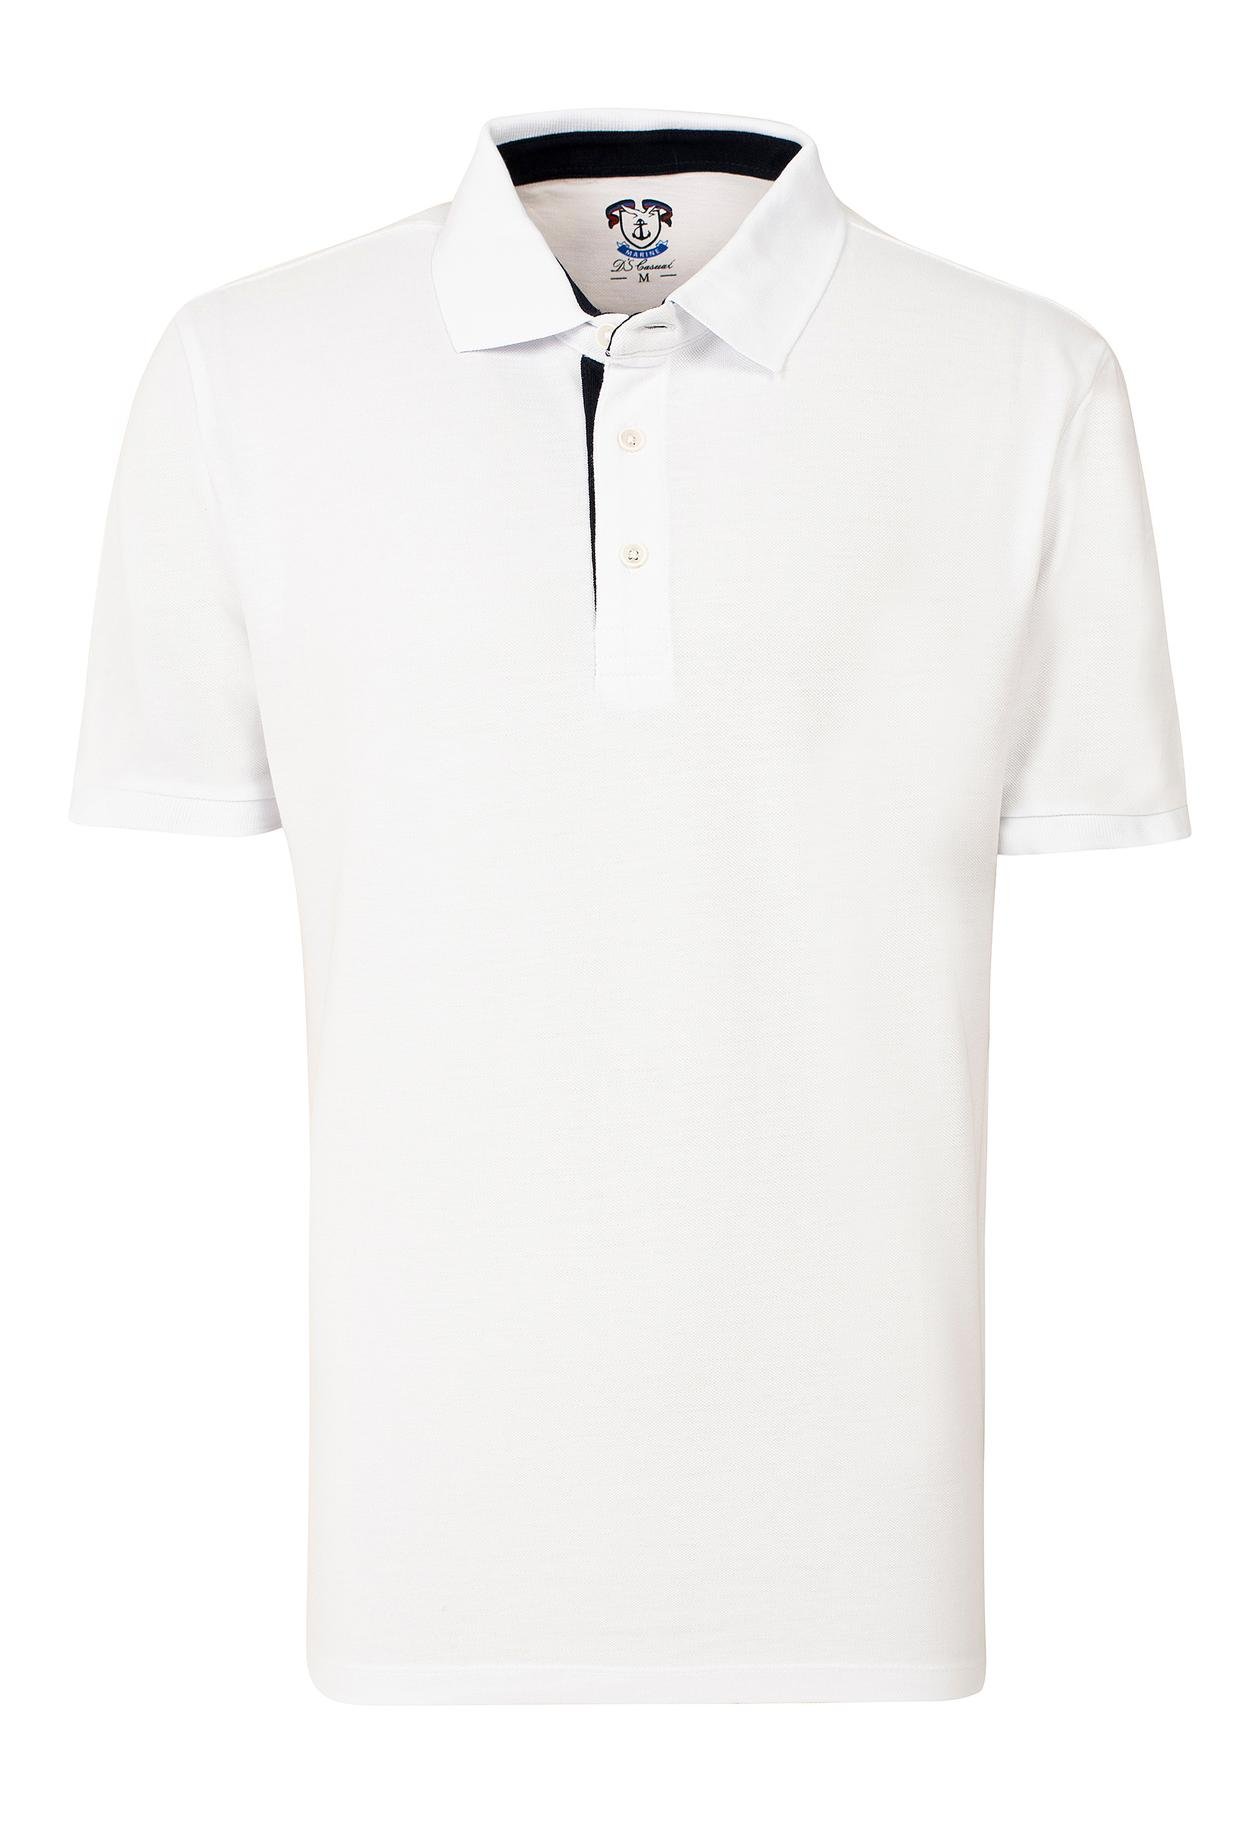 Ds Damat Regular Fit Beyaz Pike Dokulu T-shirt